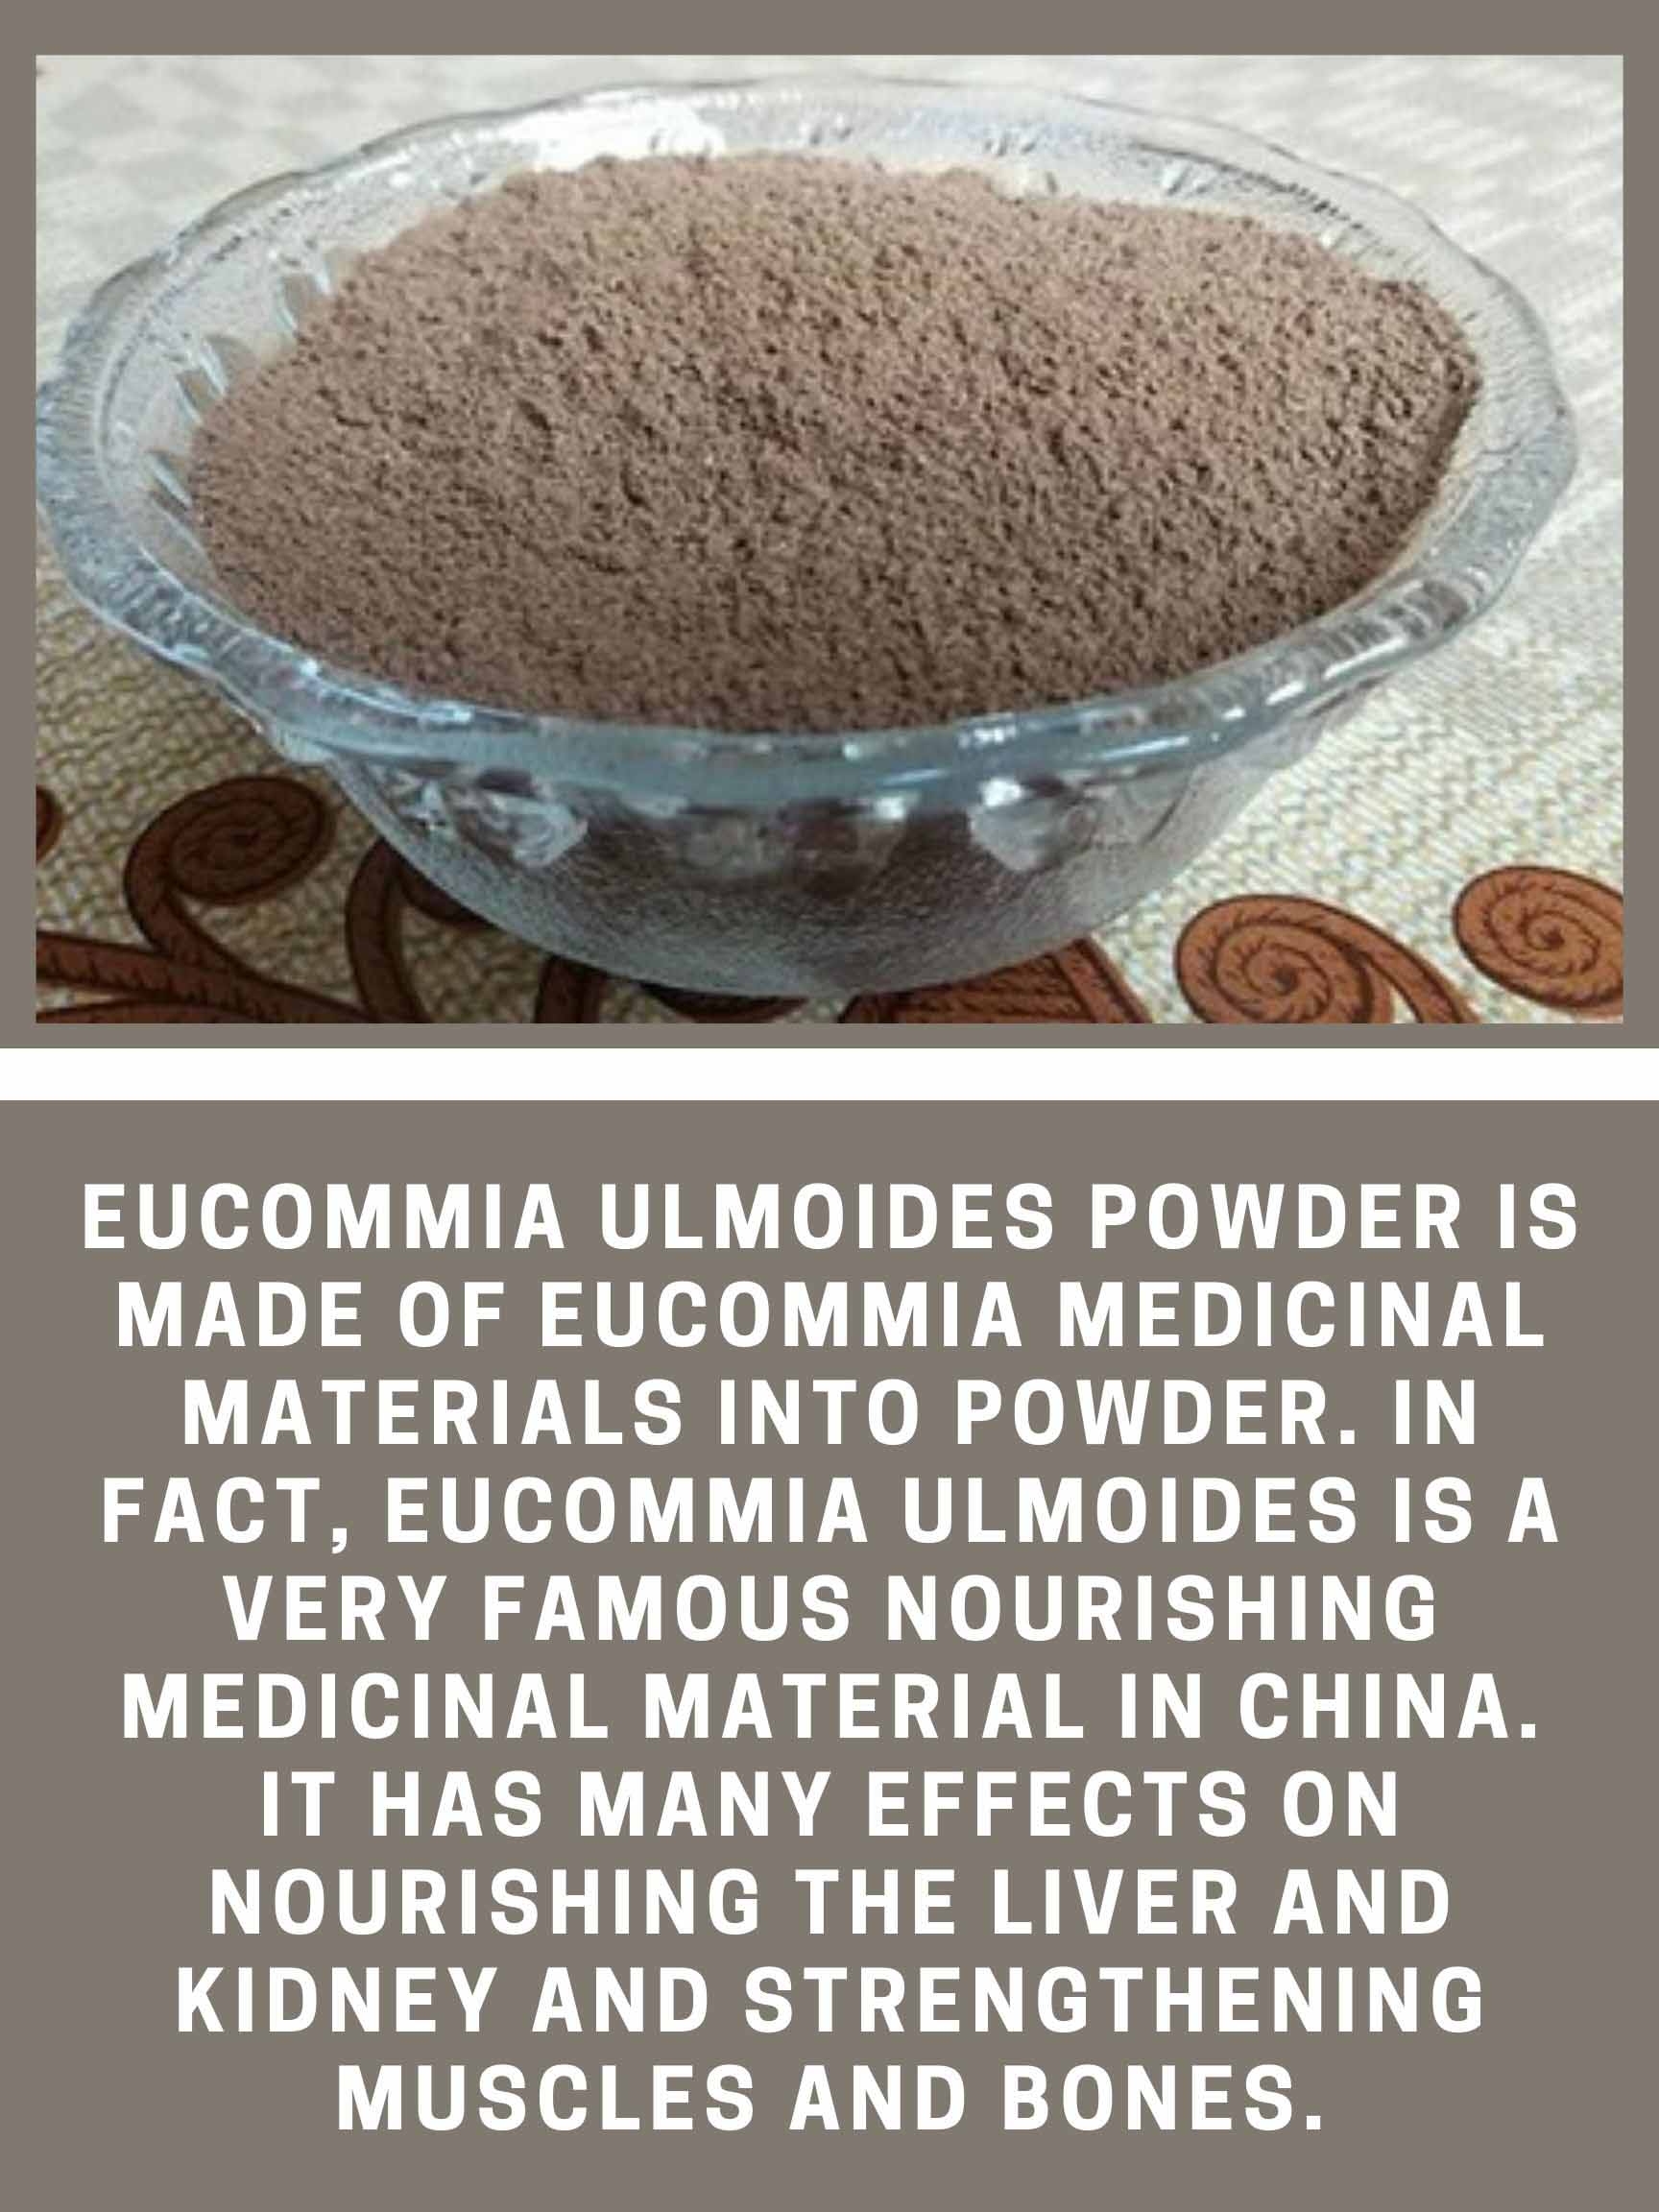 Eucommia powder benefits